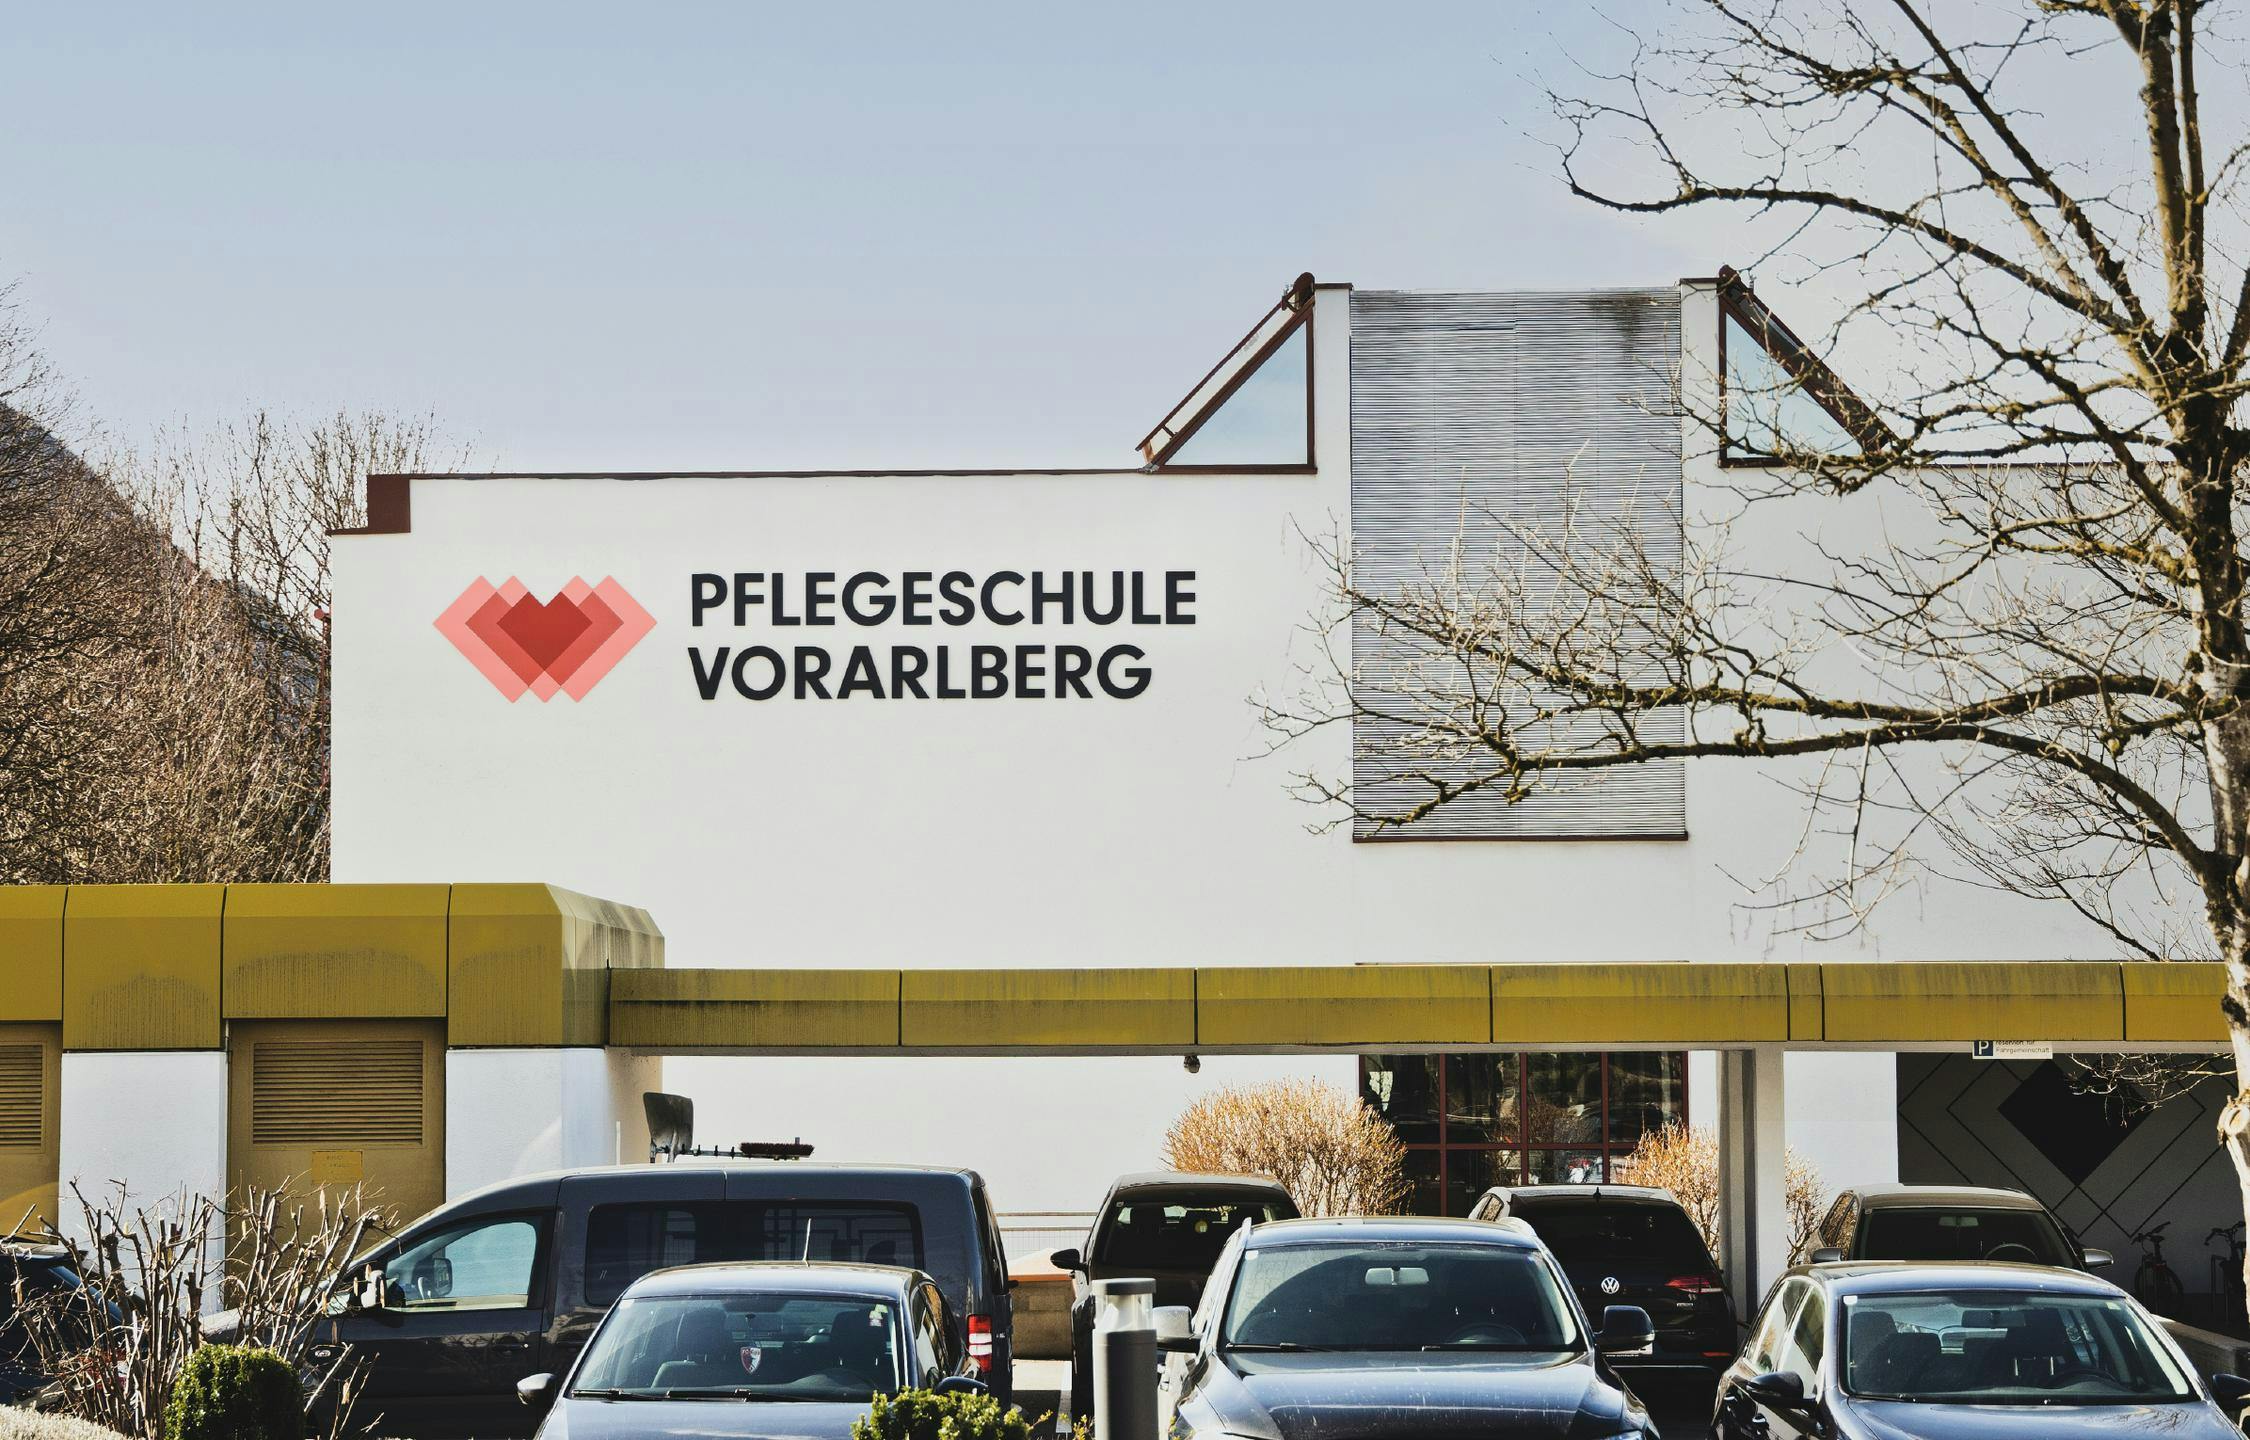 Pflegeschule Vorarlberg, Zeughaus Design © Patricia Keckeis